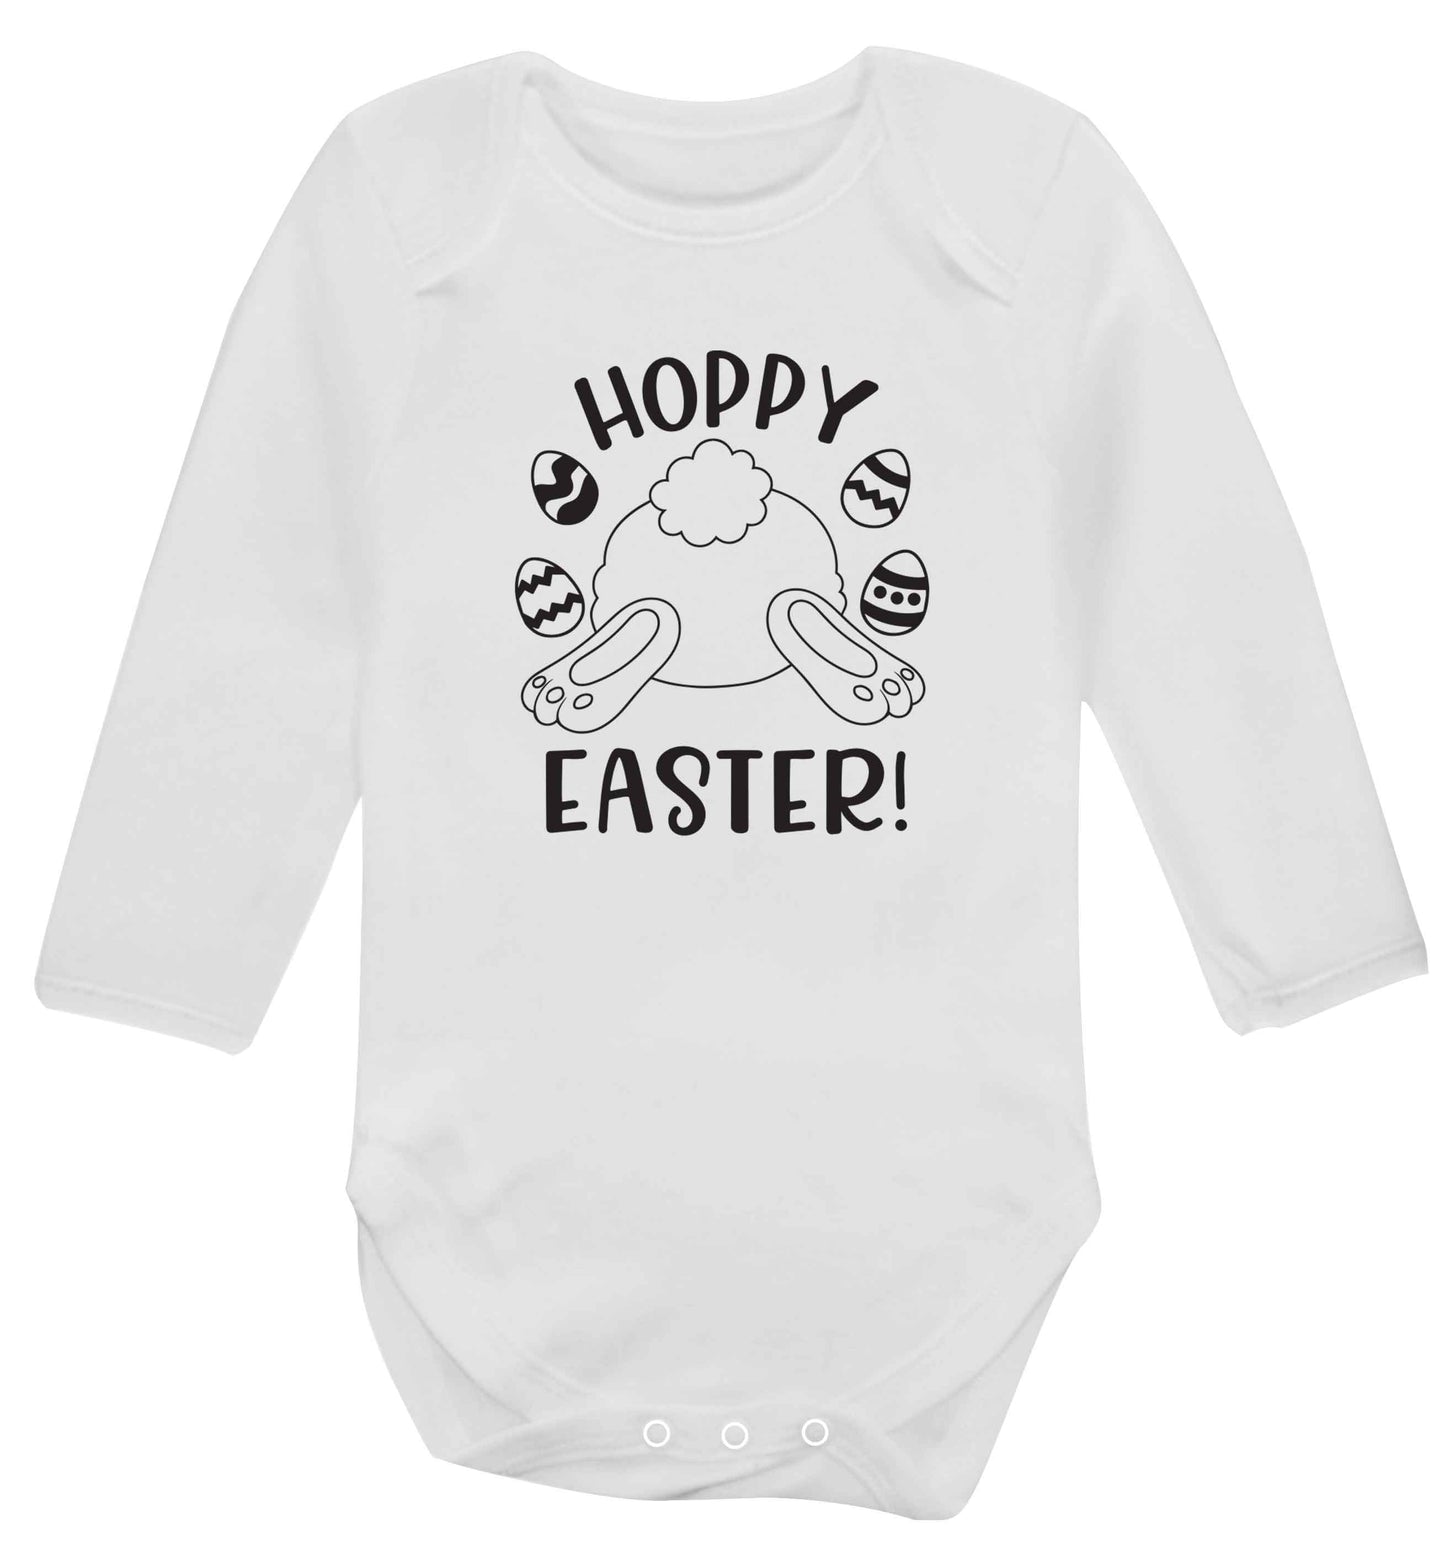 Hoppy Easter baby vest long sleeved white 6-12 months